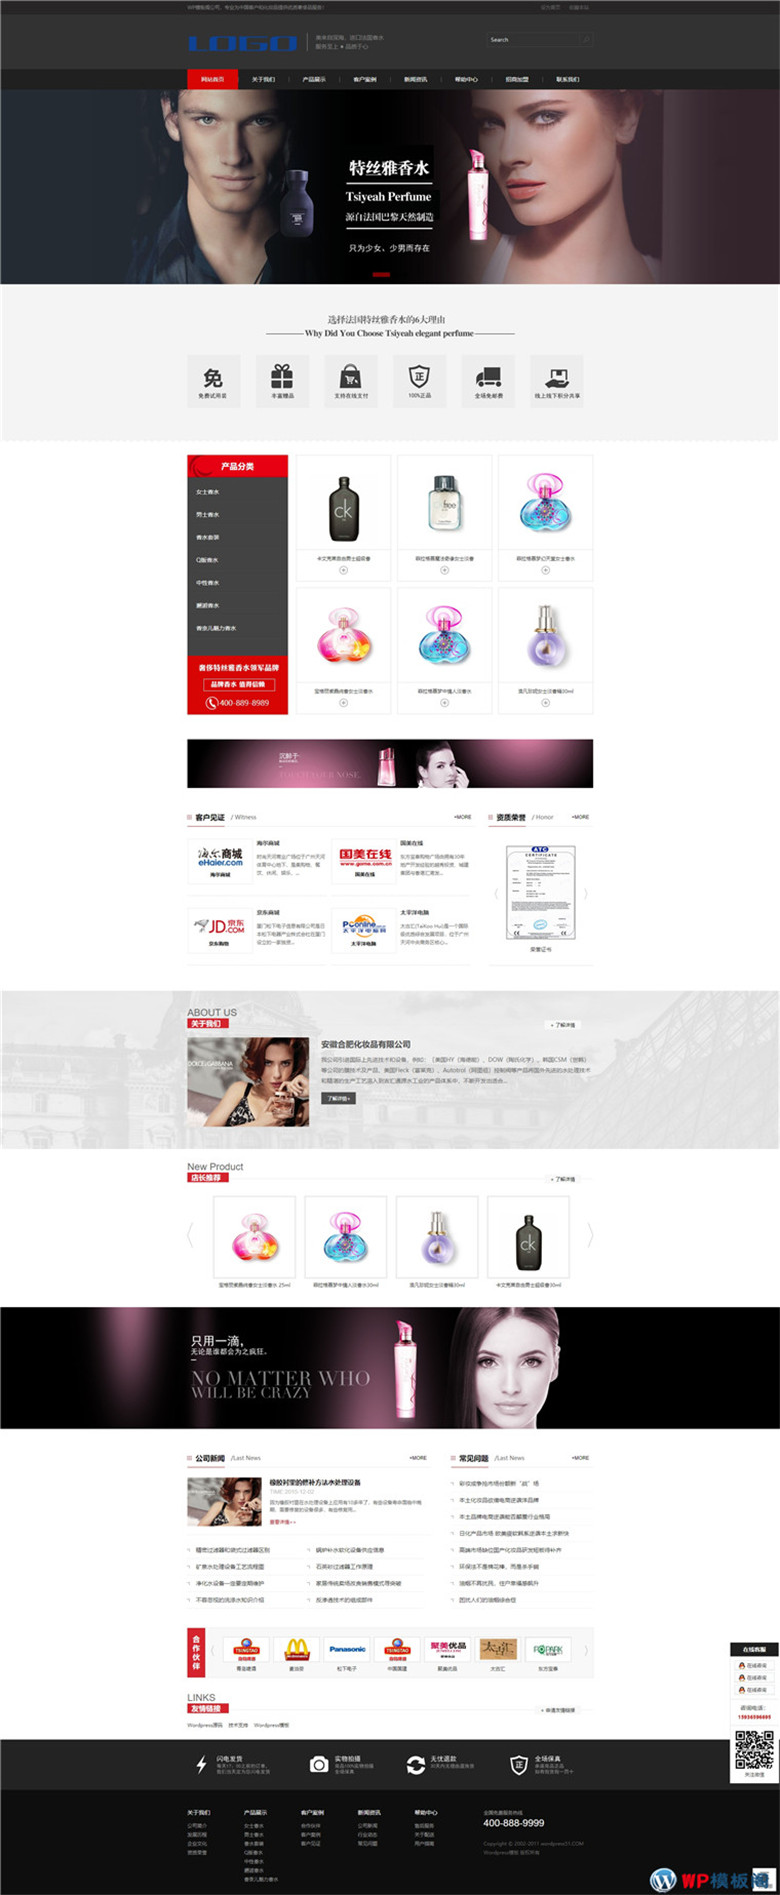 html5高端黑色化妆品企业下载自适应WordPress网站模板演示图